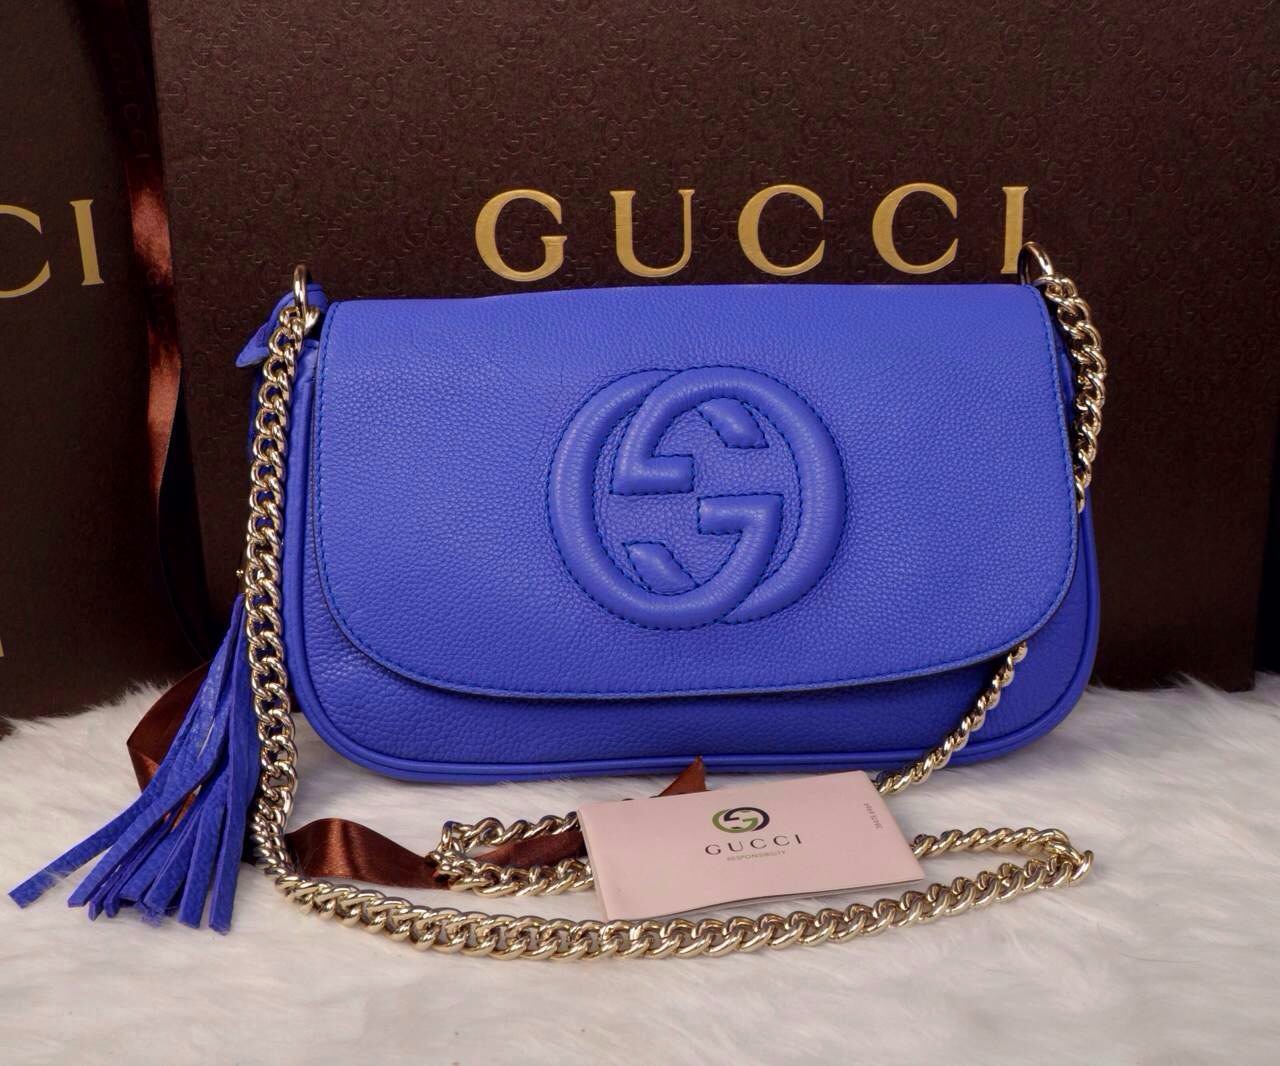 Gucci側背包海水藍 質感柔軟舒適 時尚大方